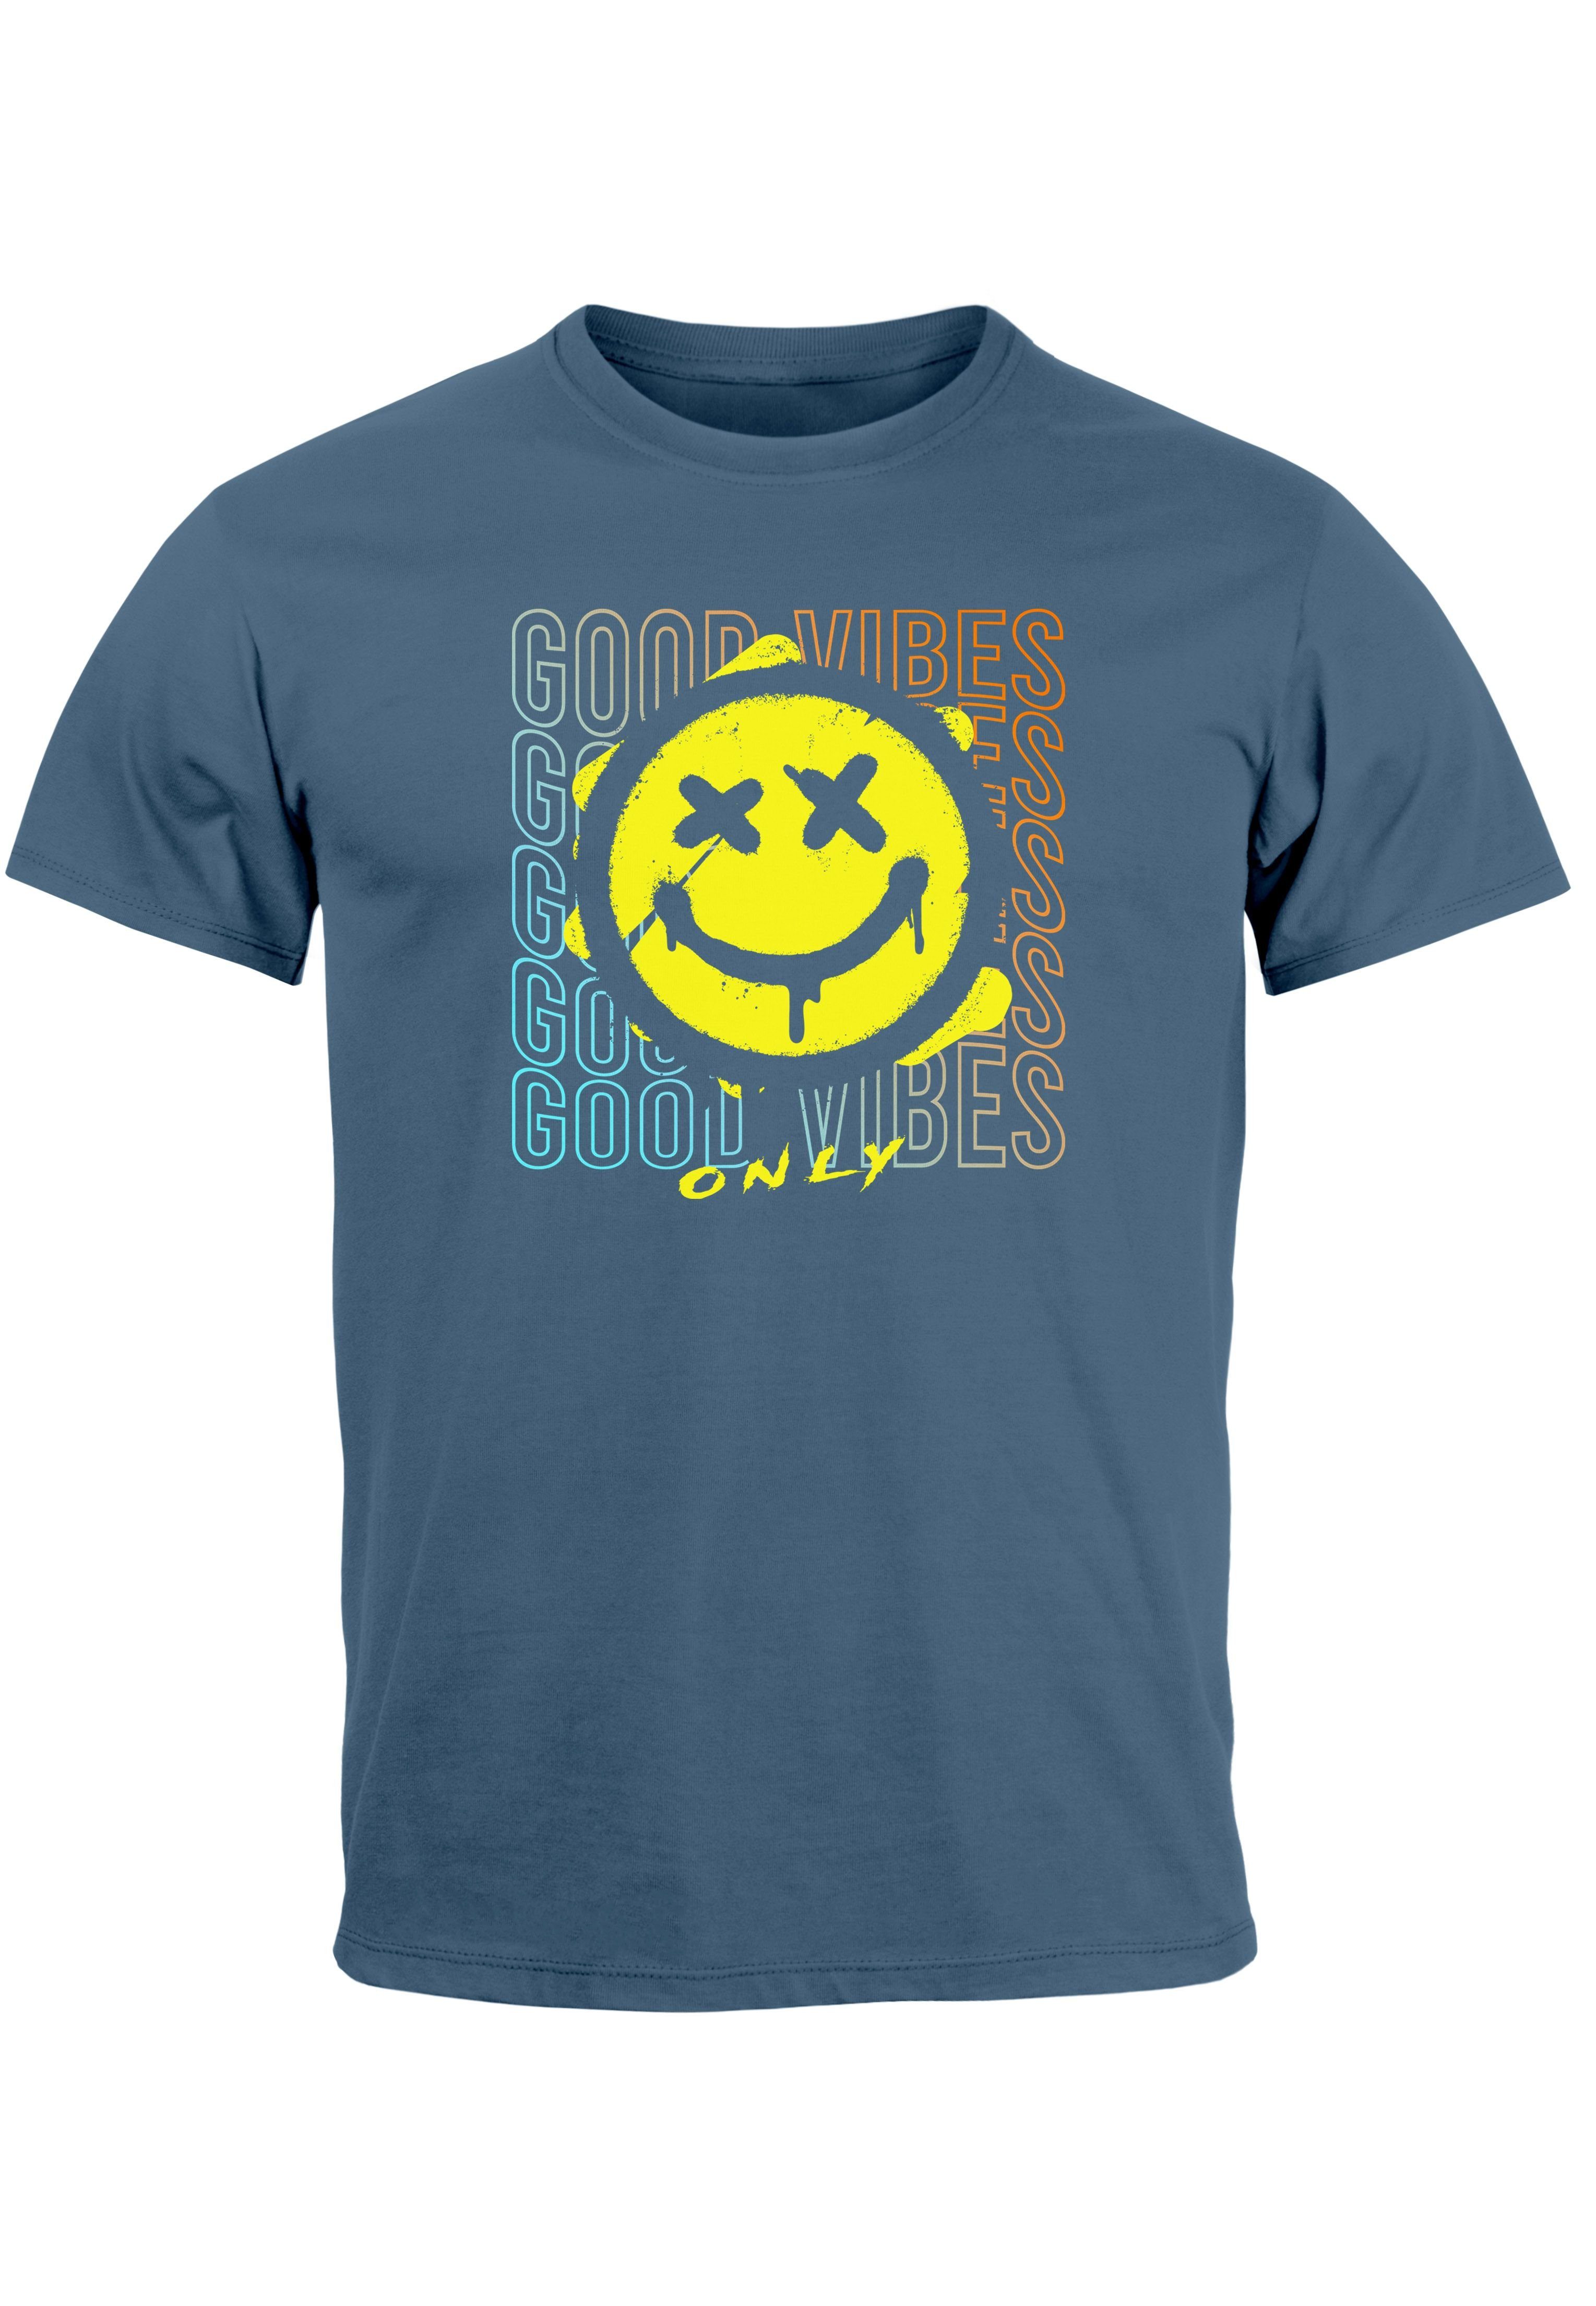 Neverless Print-Shirt Herren T-Shirt Smiling Face Good Vibes Print Aufdruck Bedruckt Teachwe mit Print denim blue